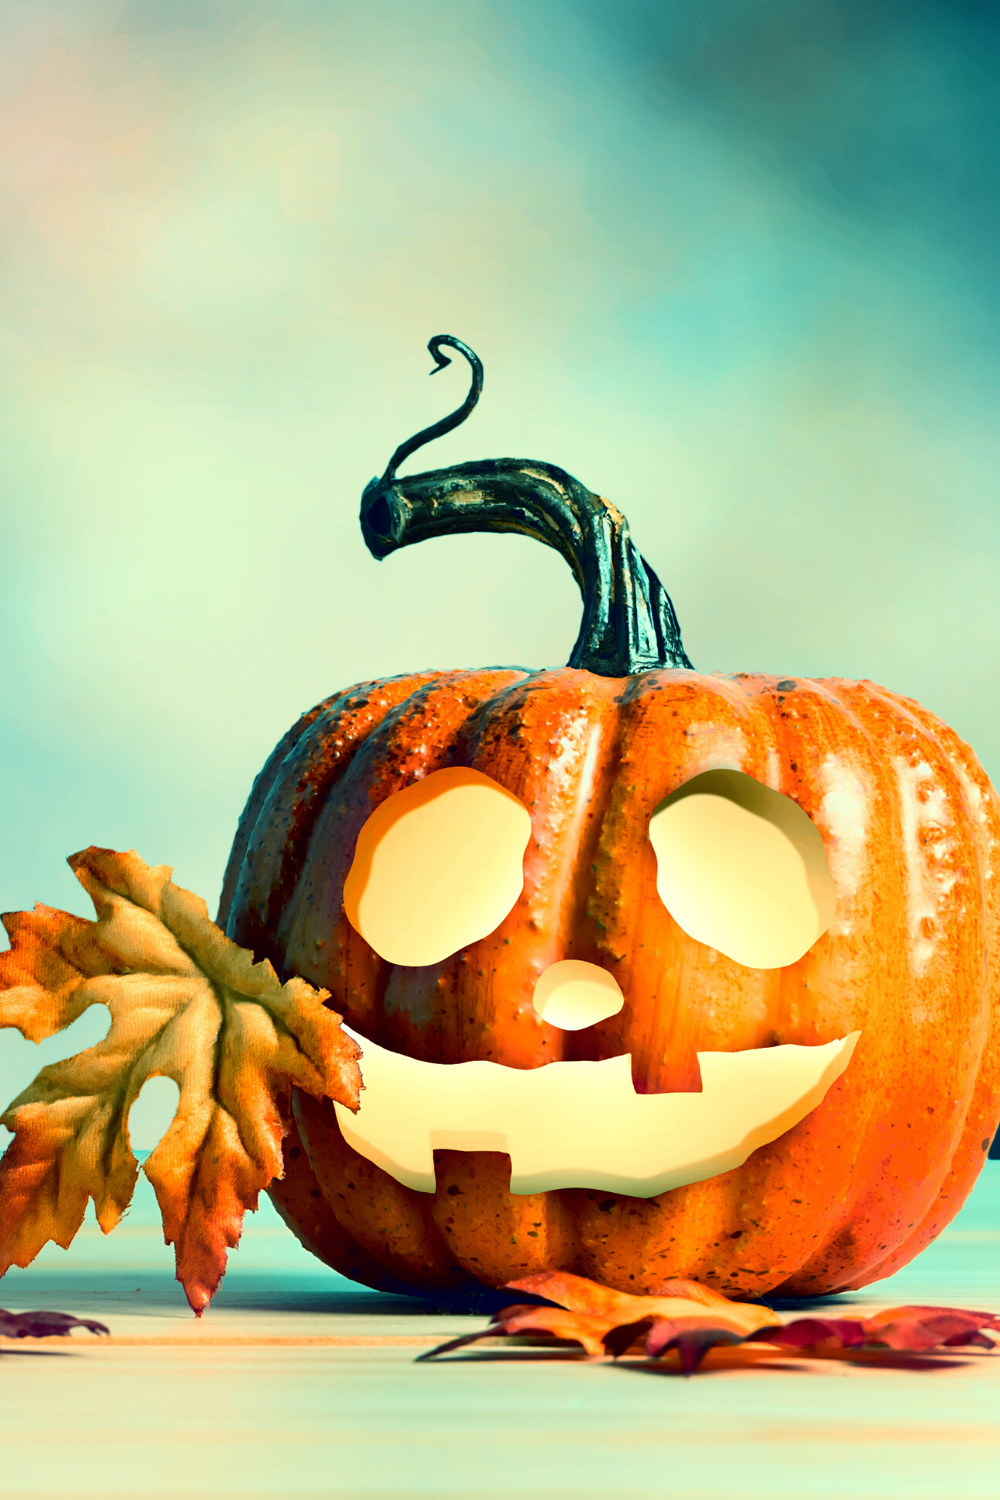 Free download Free Halloween desktop wallpaper in 2020 Halloween ...